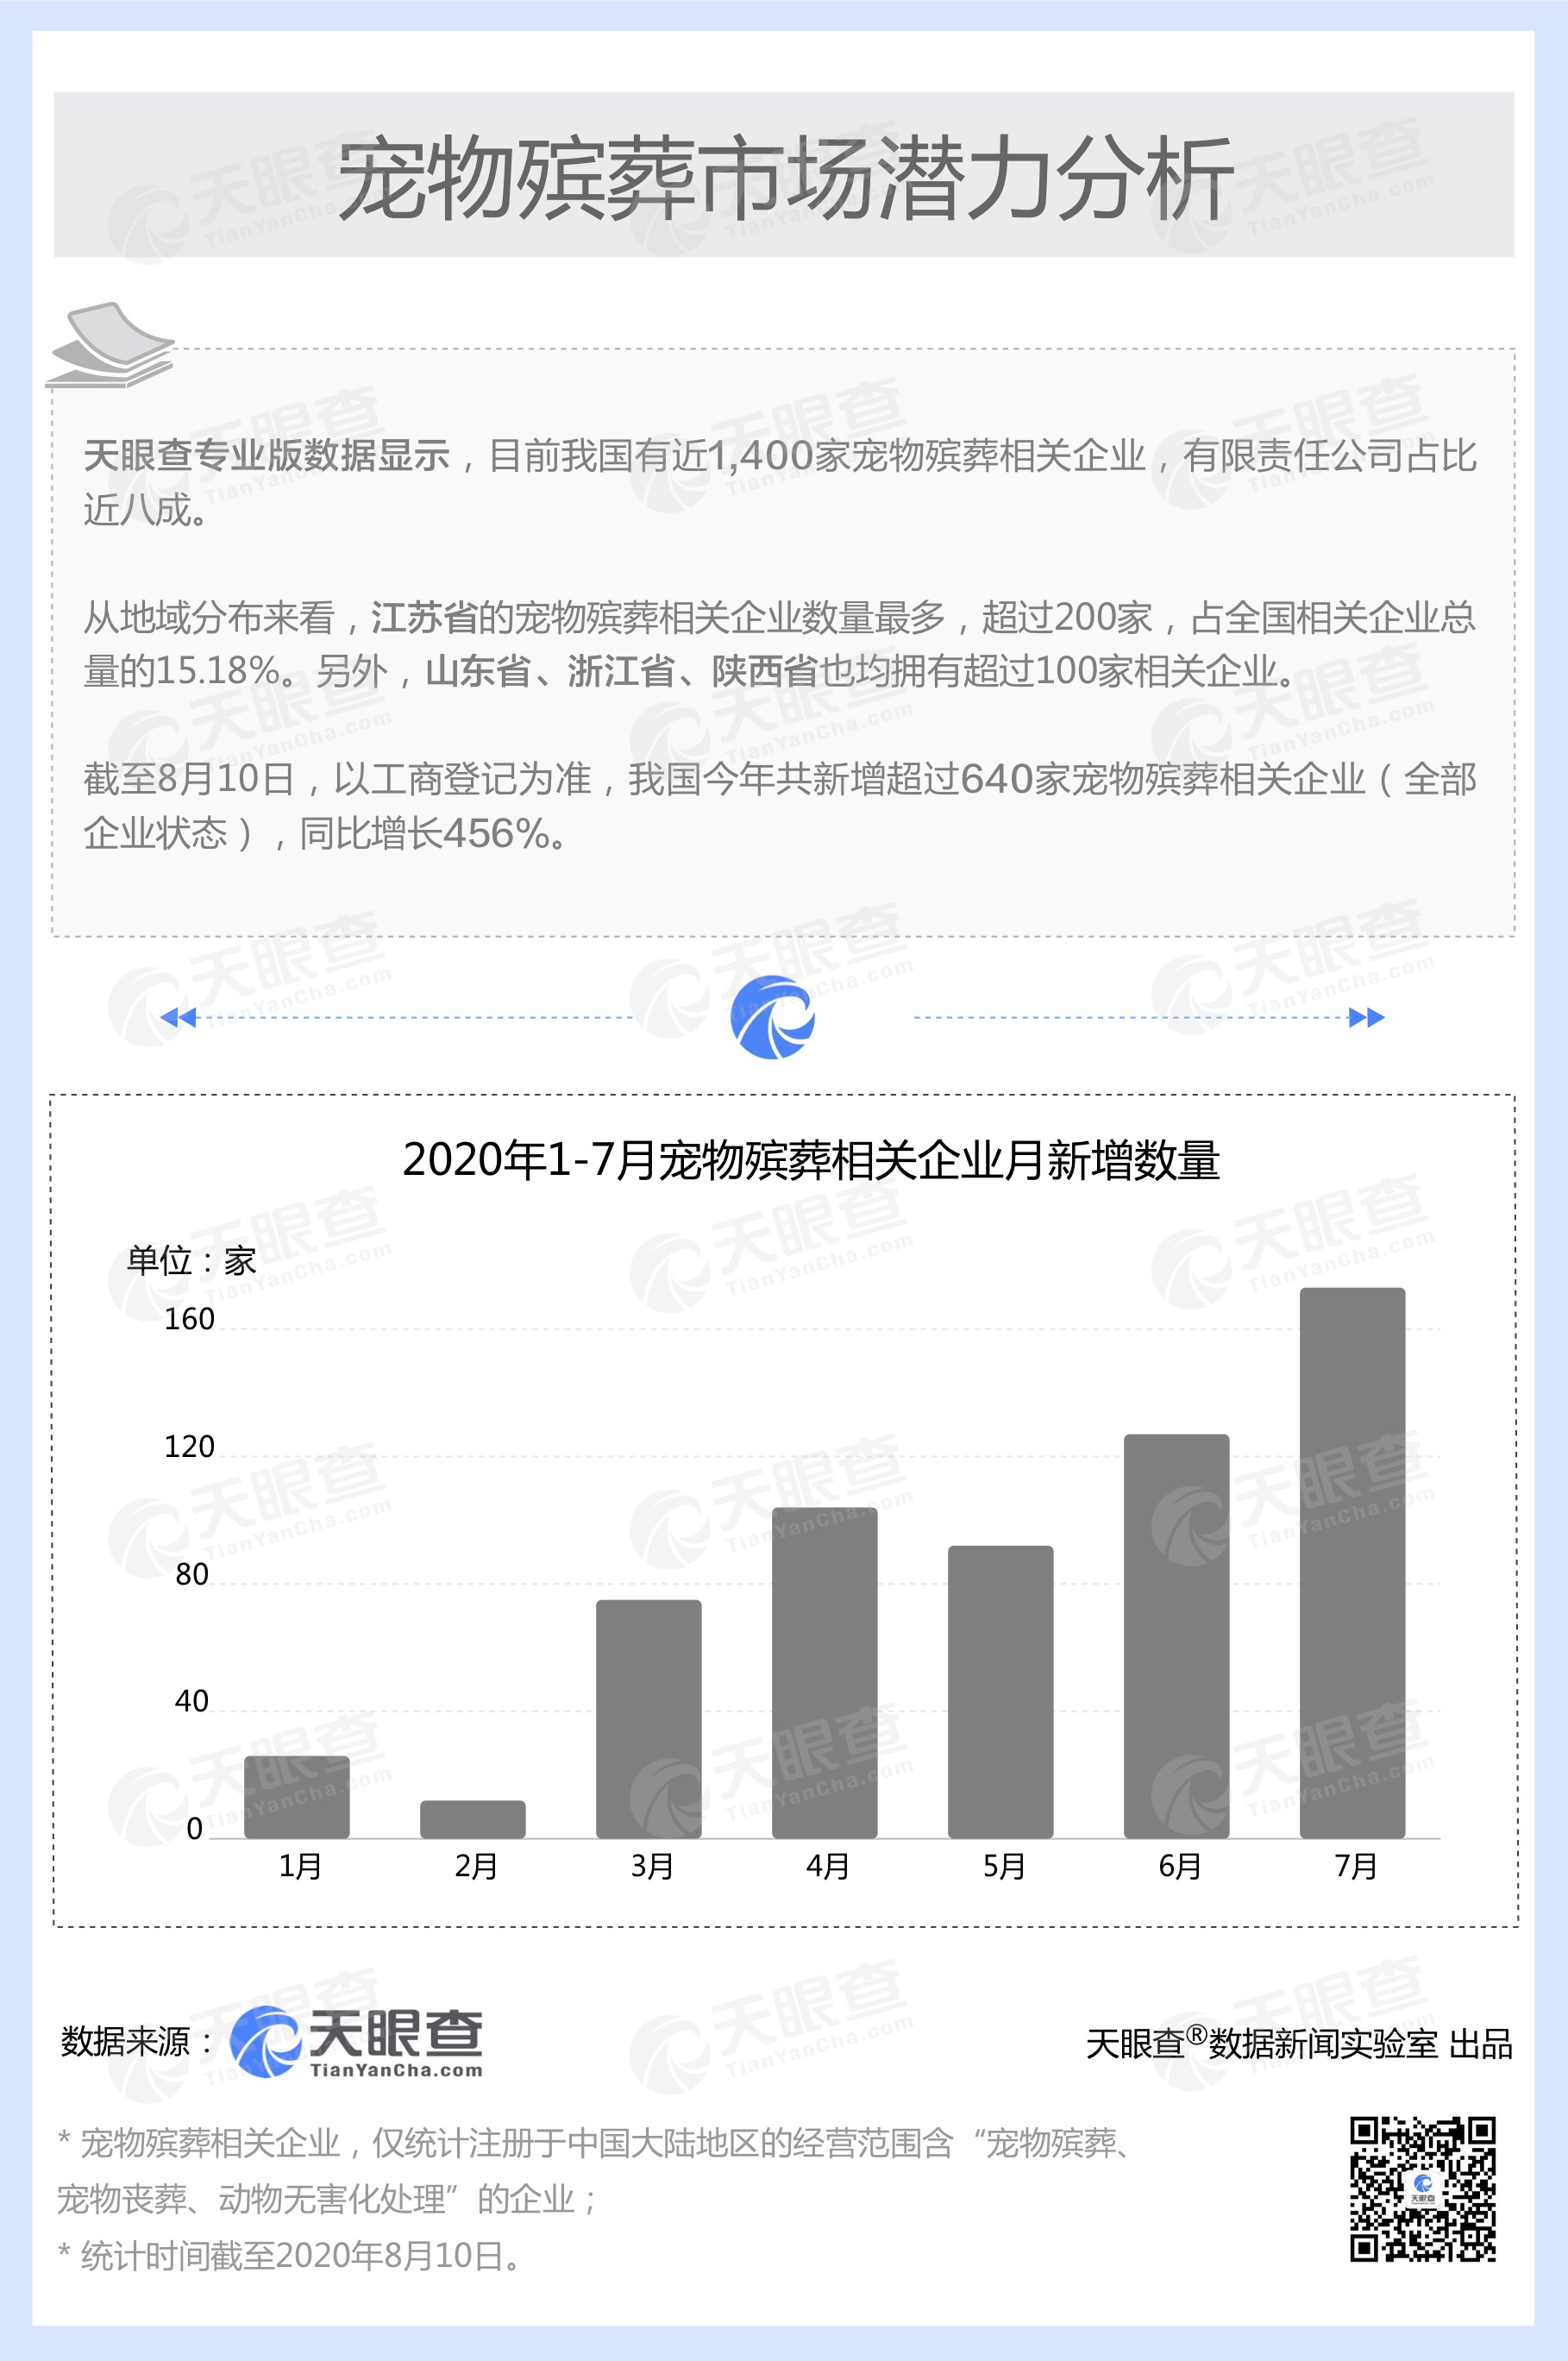 宠物殡葬市场潜力巨大，中国千余家宠物殡葬相关企业今年新增超640家